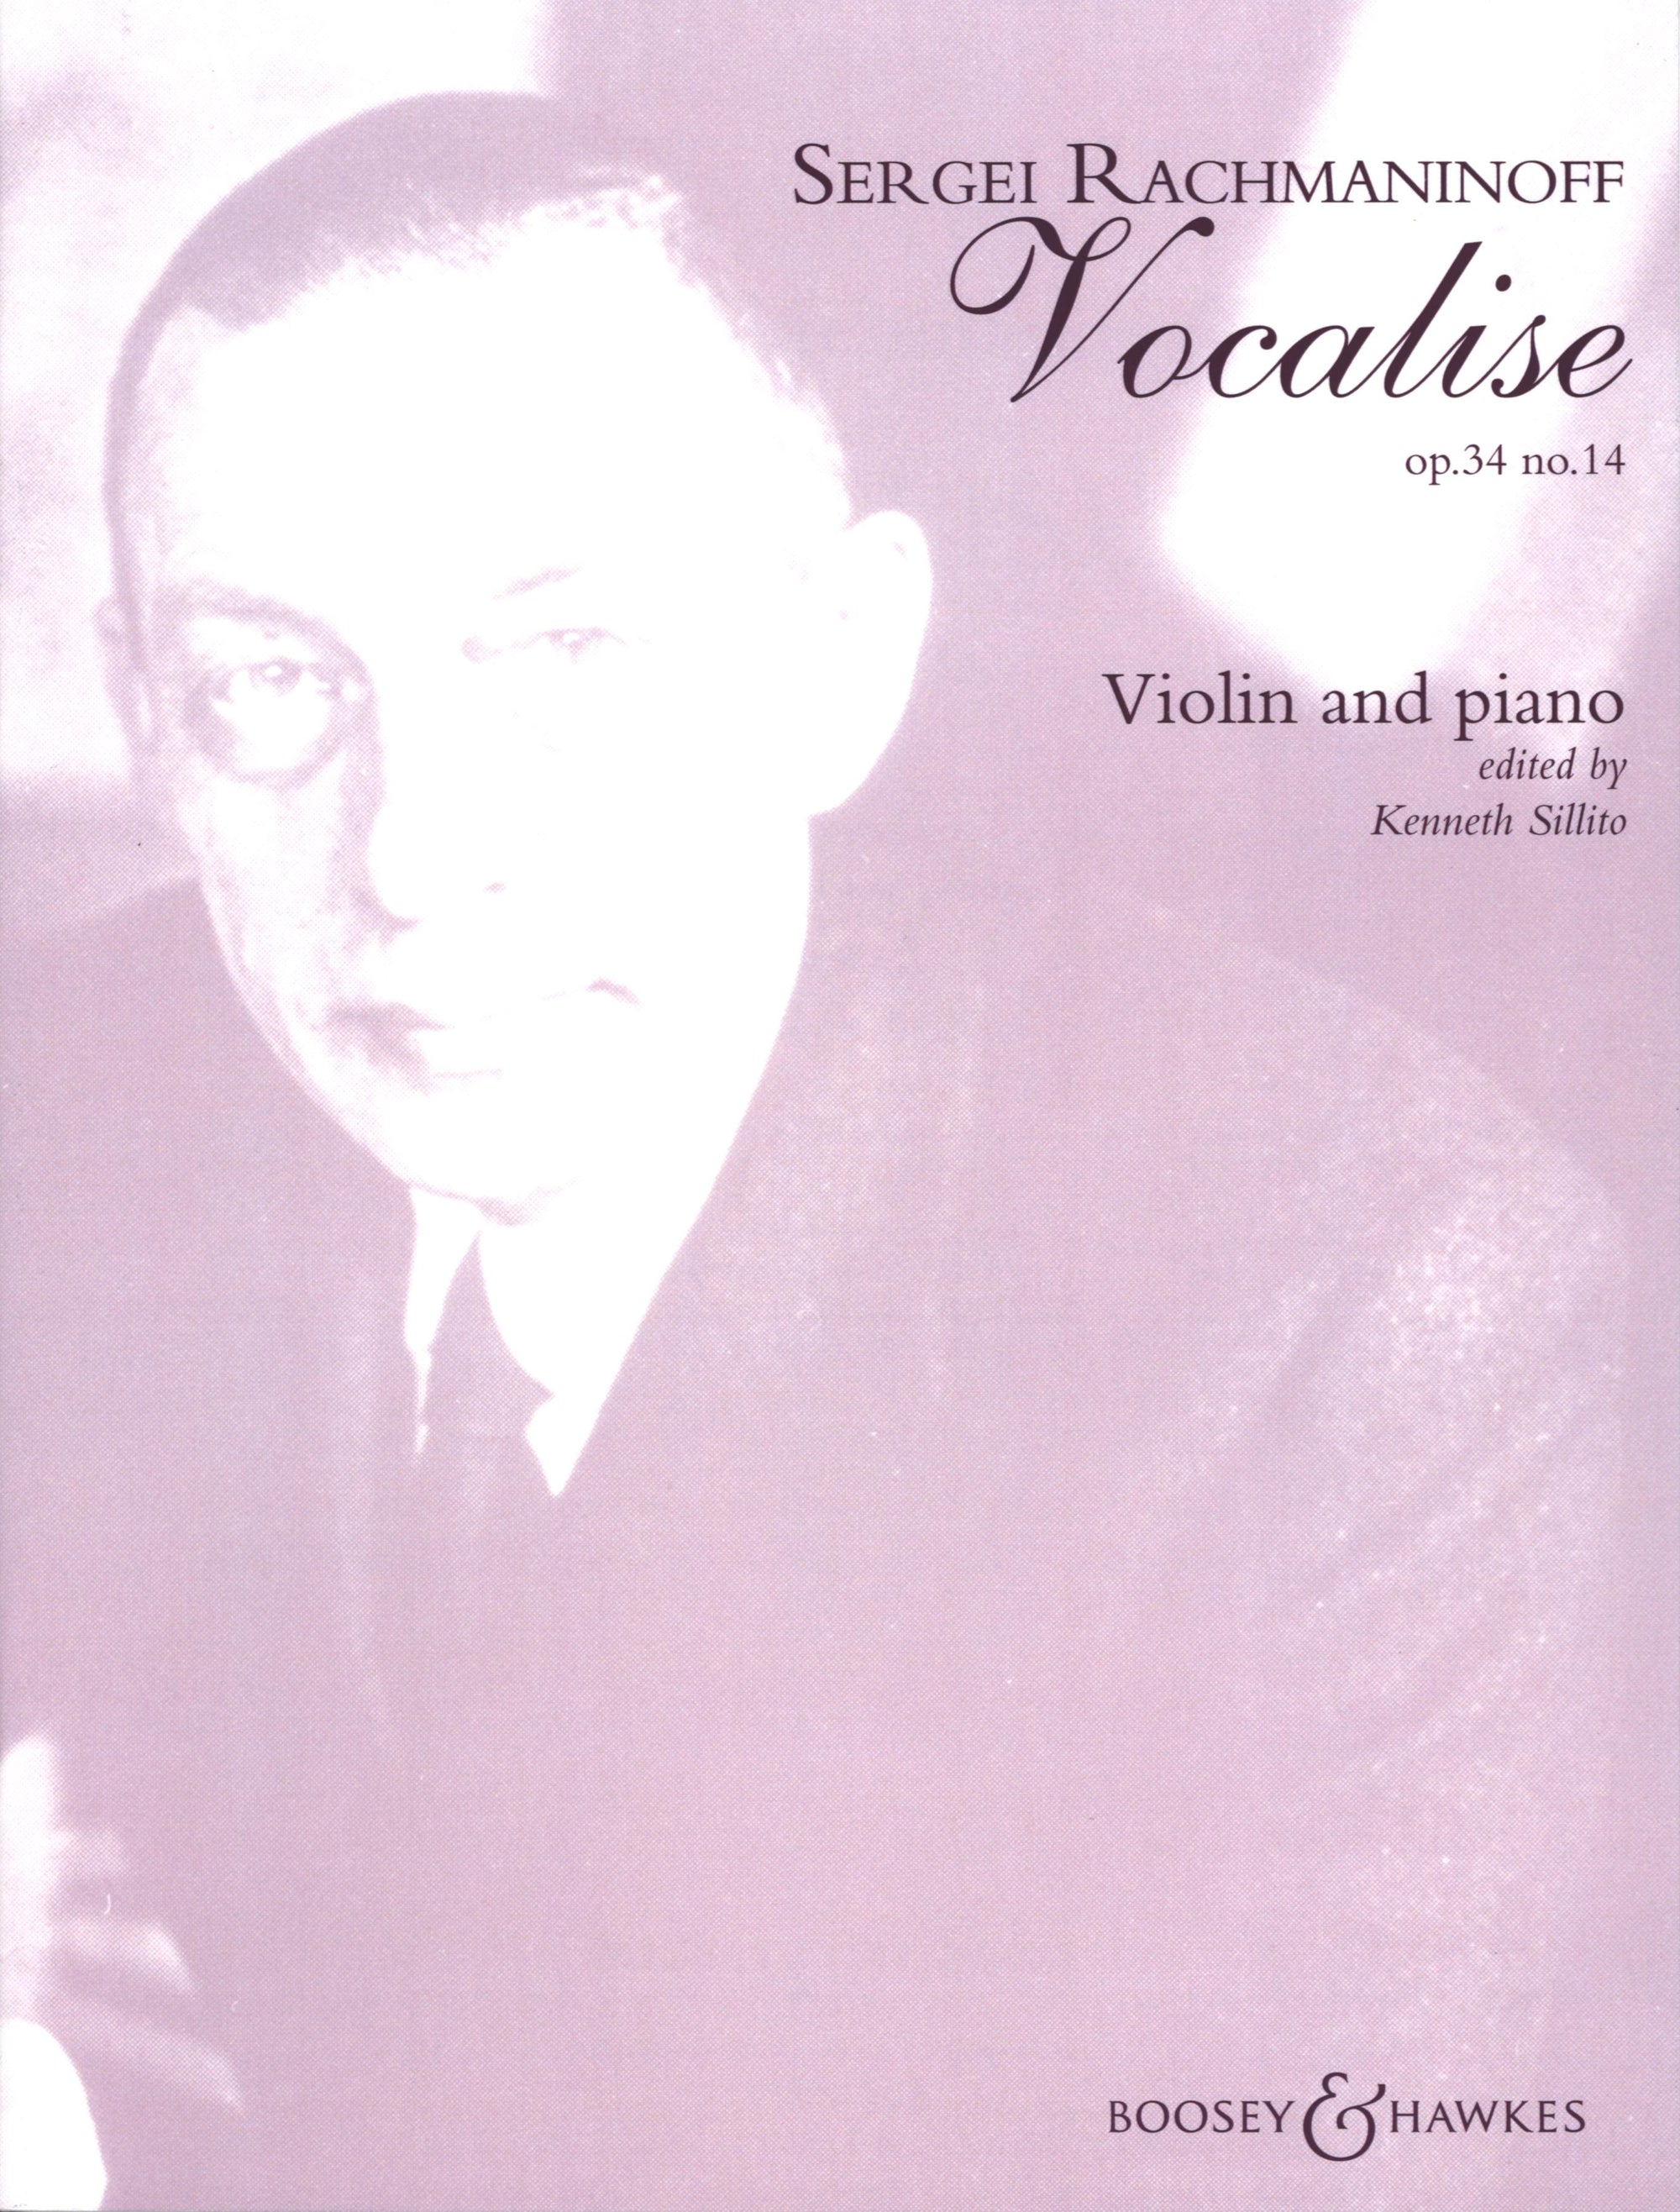 Rachmaninoff: Vocalise, Op. 34, No. 14 (violin & piano)